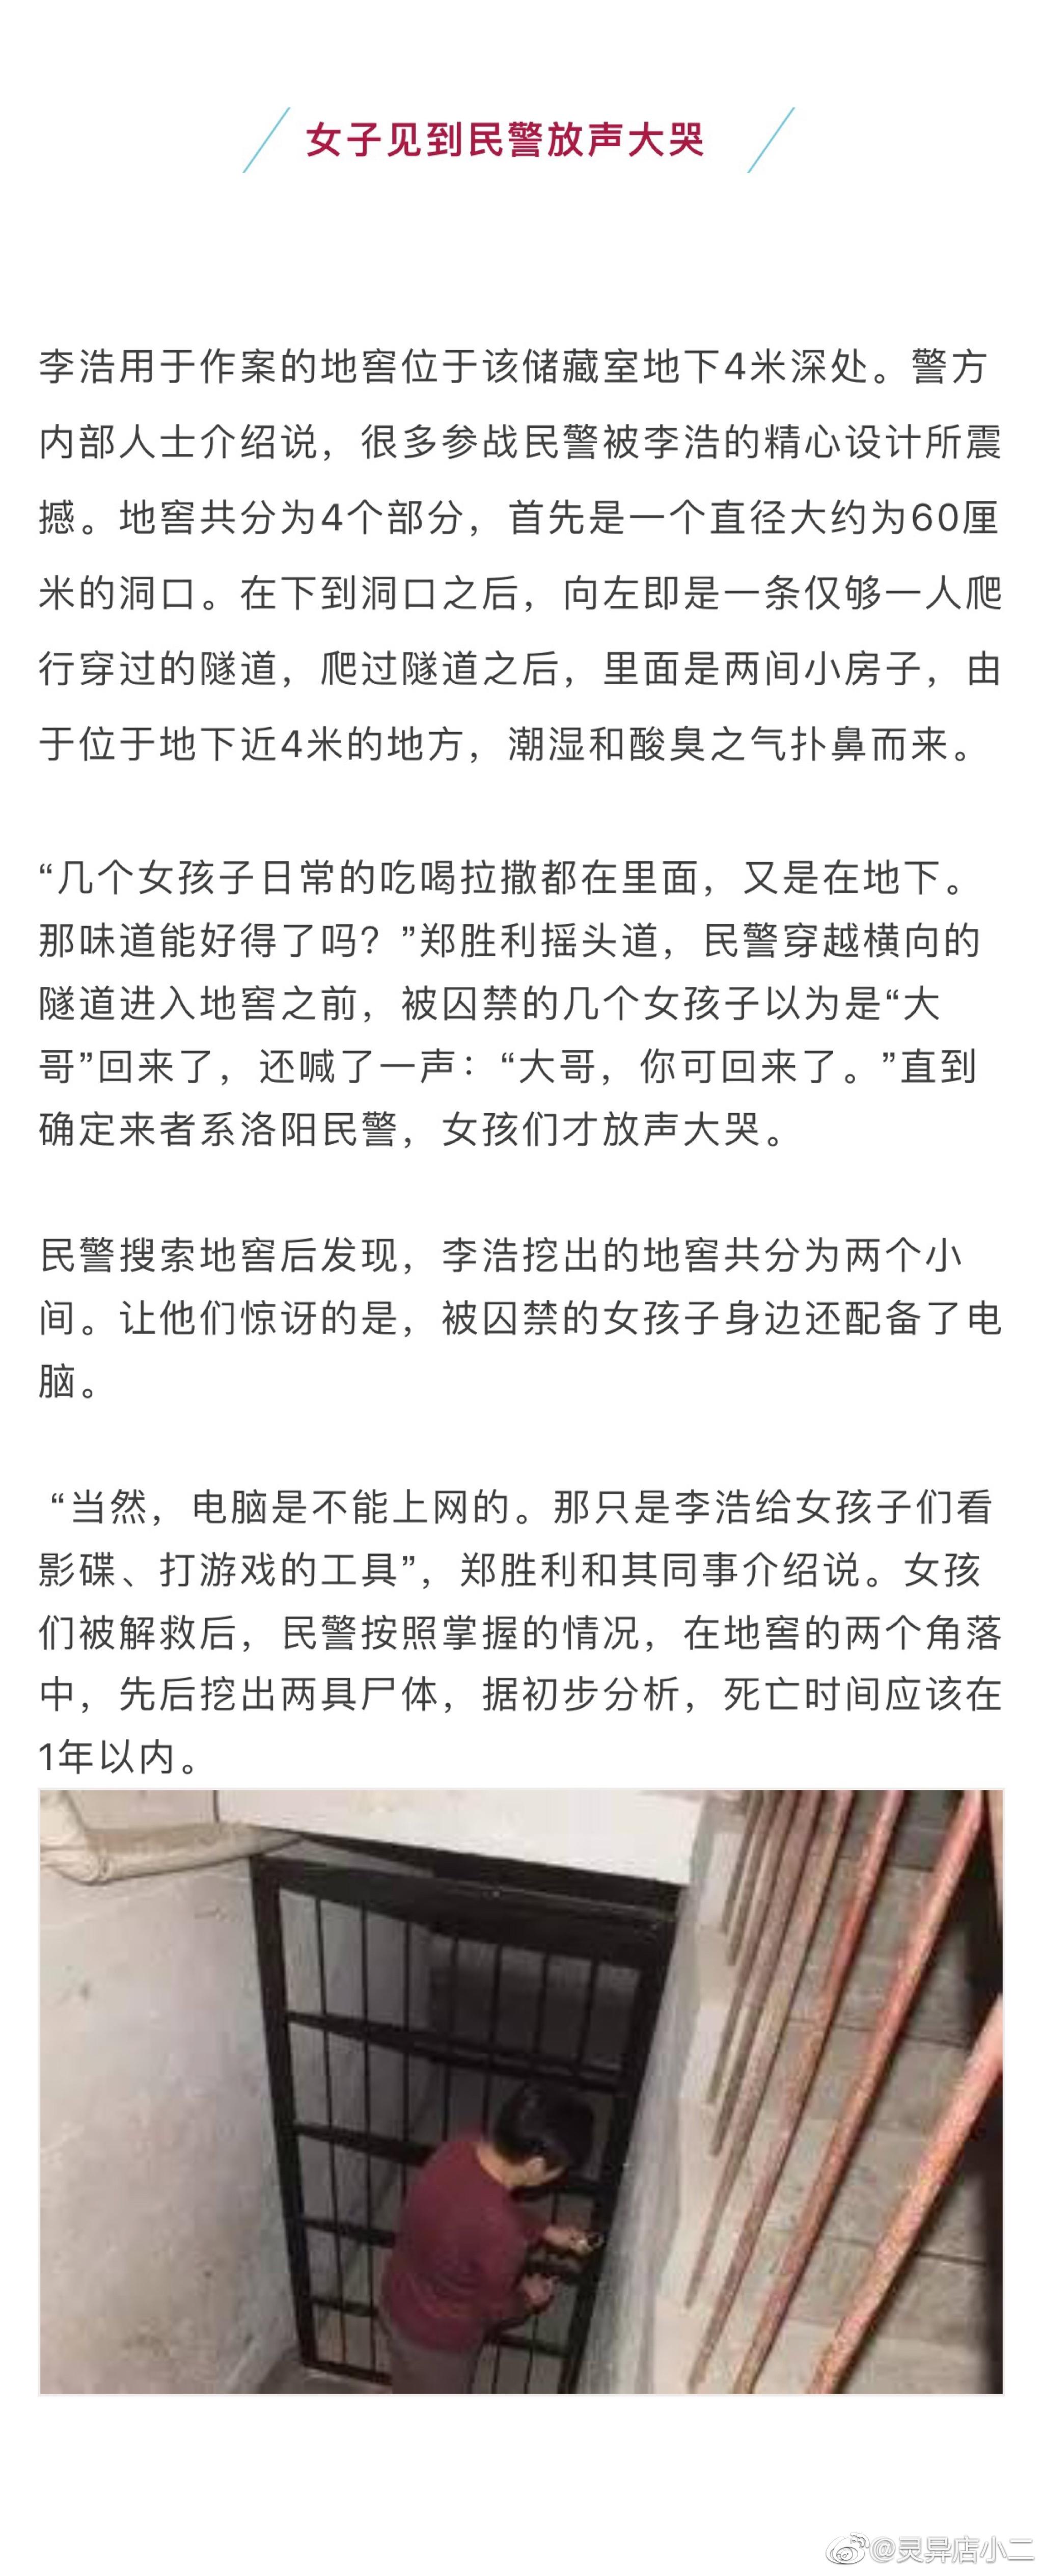 广东湛江27年前杀人案告破之后： 受害者家属报请最高检核准 对凶手行为进行追诉 - 封面新闻